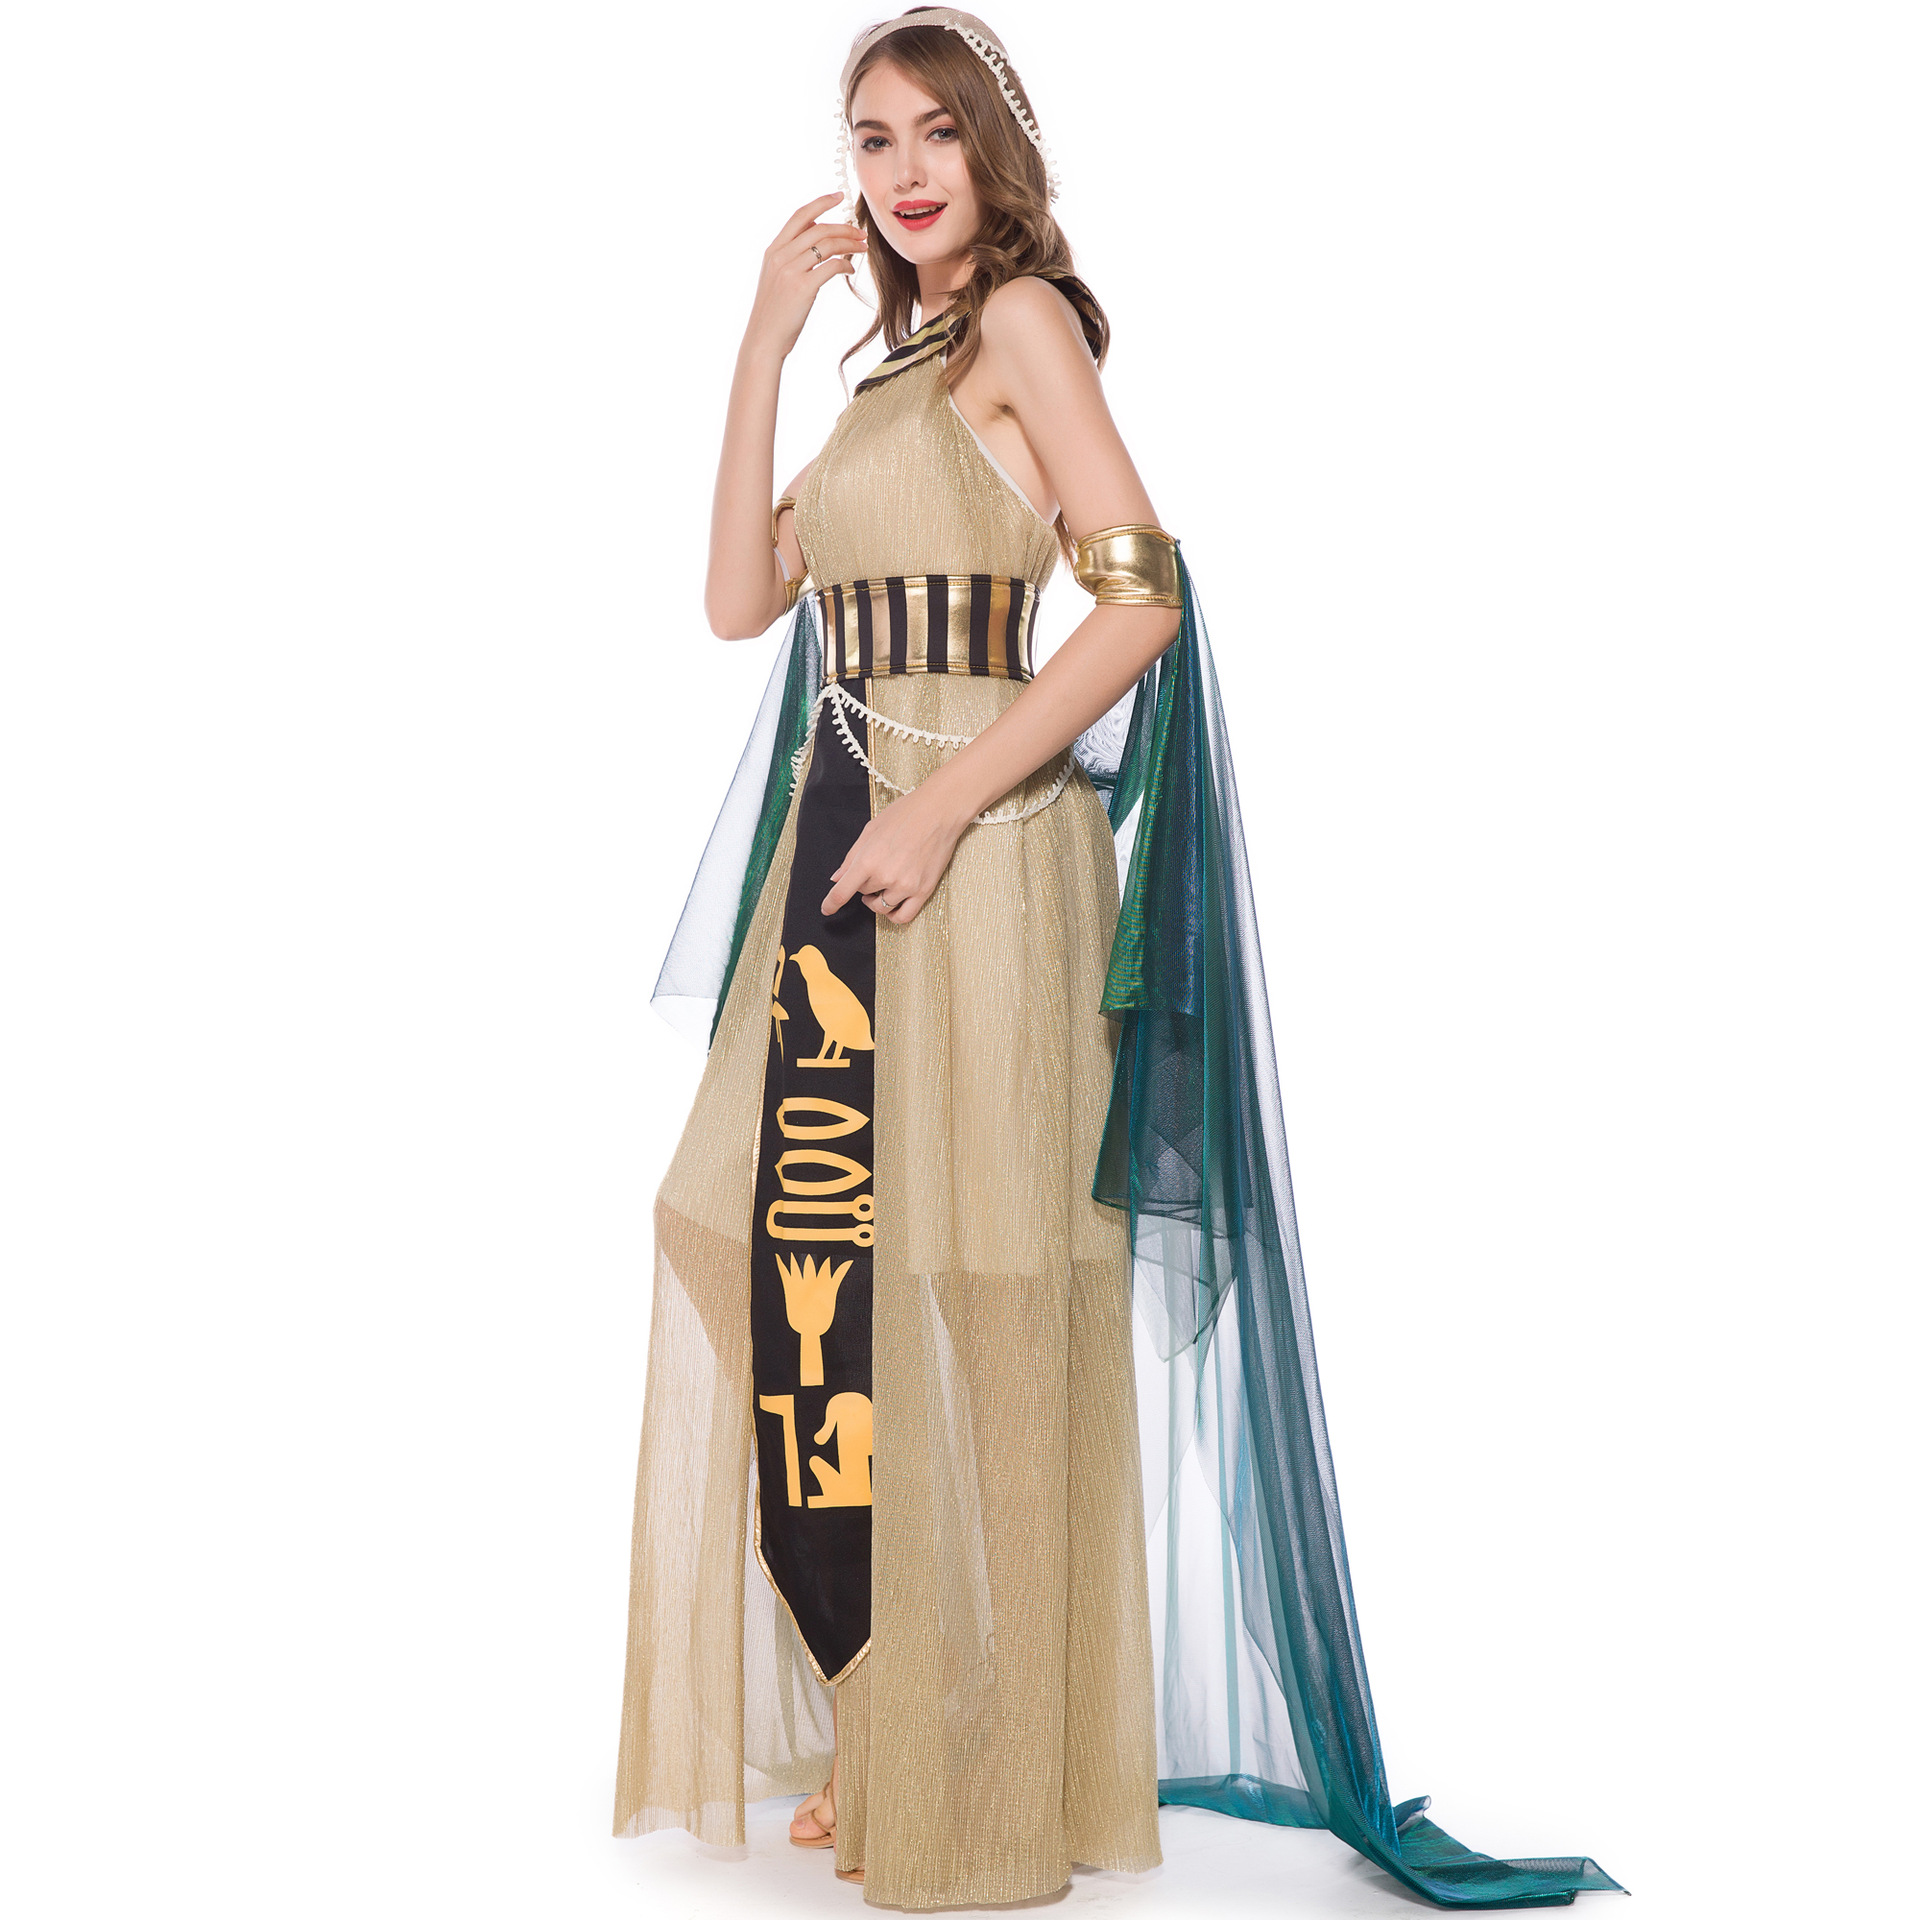 Costume a tema festa di Halloween Costume cosplay da donna Mantello da dea greca Abito da ballo da principessa Cos Regina egiziana